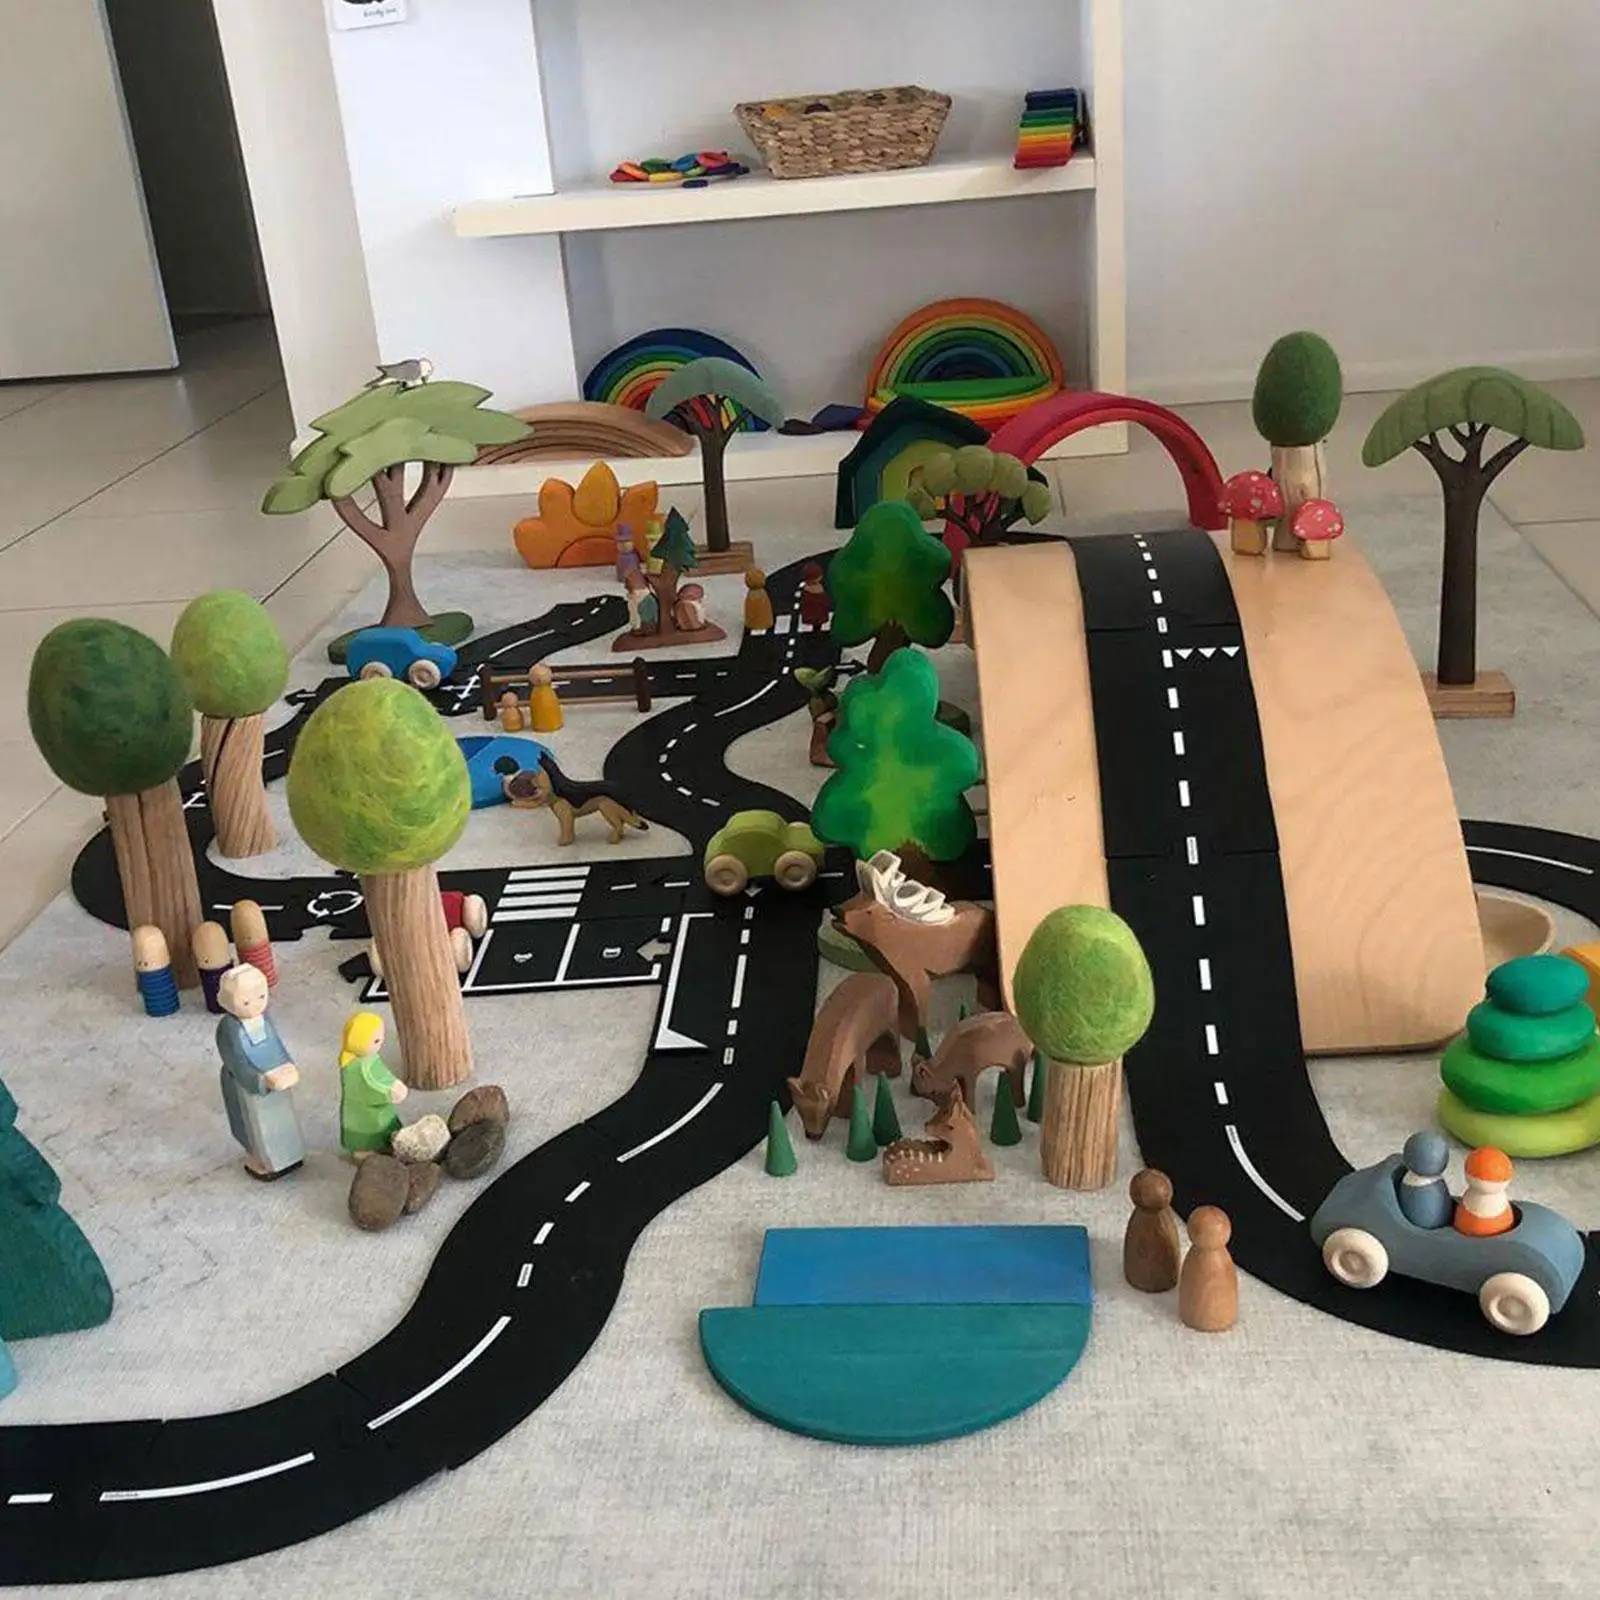 

Детские дорожные игрушки «сделай сам» для строительства дорог, игрушечный автомобиль, дорожная Автомагистраль, Скоростная автомагистраль, гибкий трек-головоломка, набор игровых сцен, коврик-пазл